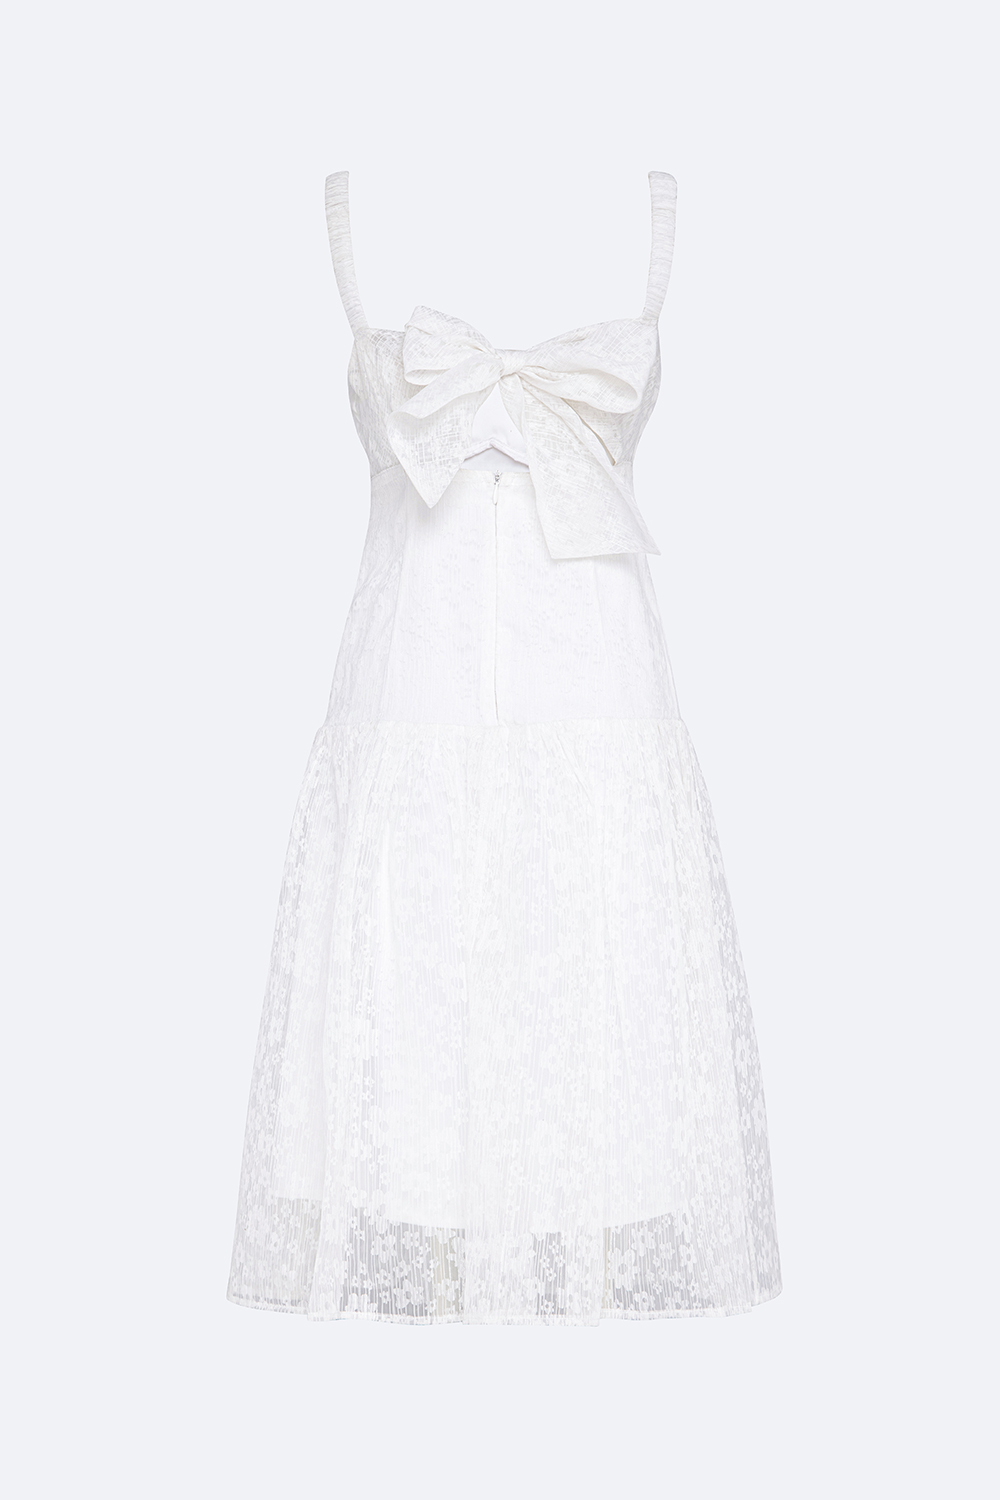 Đầm ren trắng hai dây cut-out lưng HL21-35 | Thời trang công sở ...